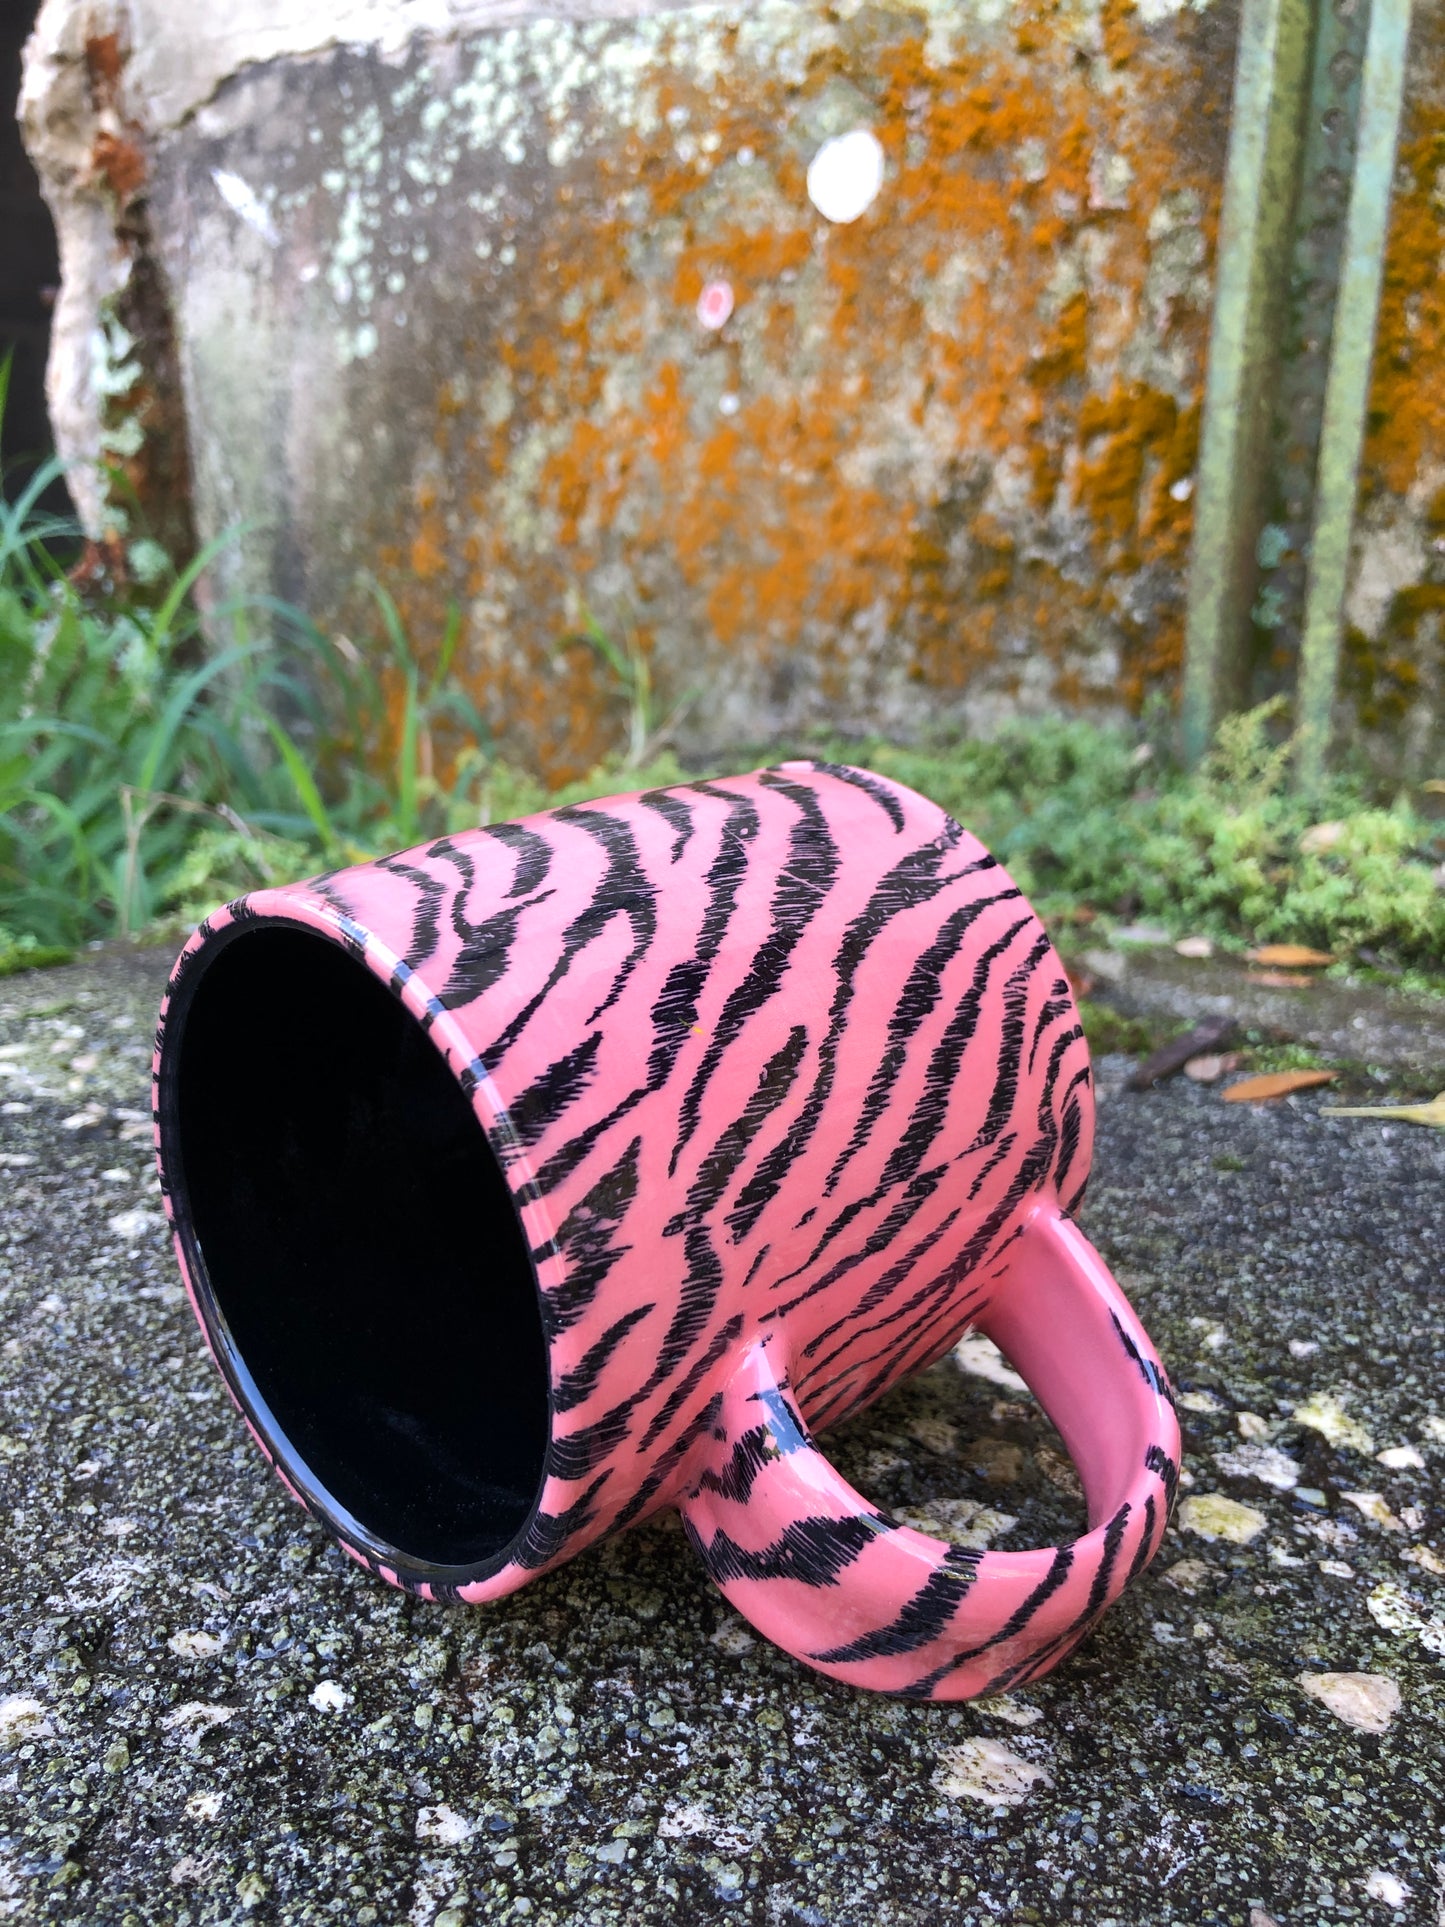 Pink Zebra Stripe Mug